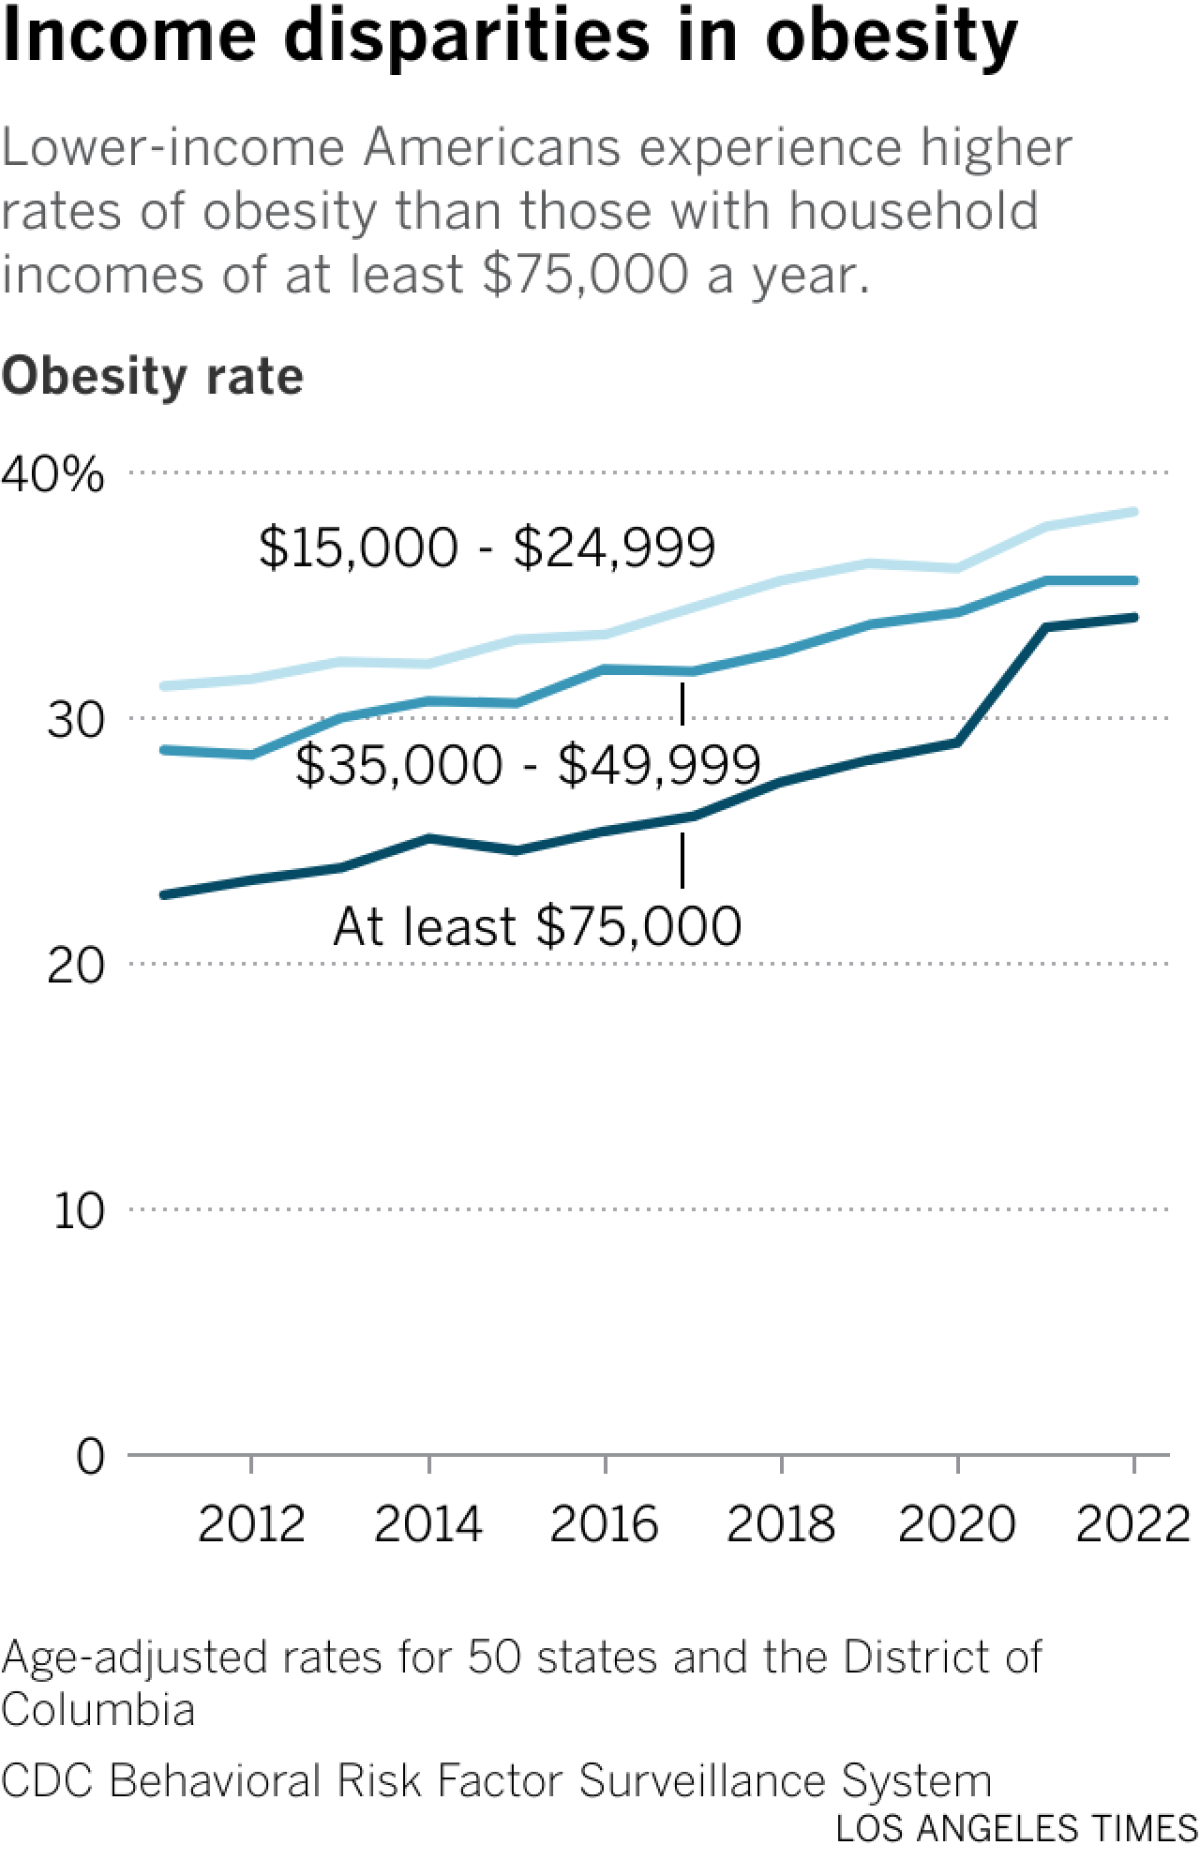 O gráfico de linhas mostra as taxas de obesidade entre três categorias de renda: US$ 15 a US$ 26 mil, US$ 35 a US$ 50 mil e pelo menos US$ 75 mil.  As taxas são mais elevadas entre os rendimentos mais baixos, mas aumentam em todas as categorias.